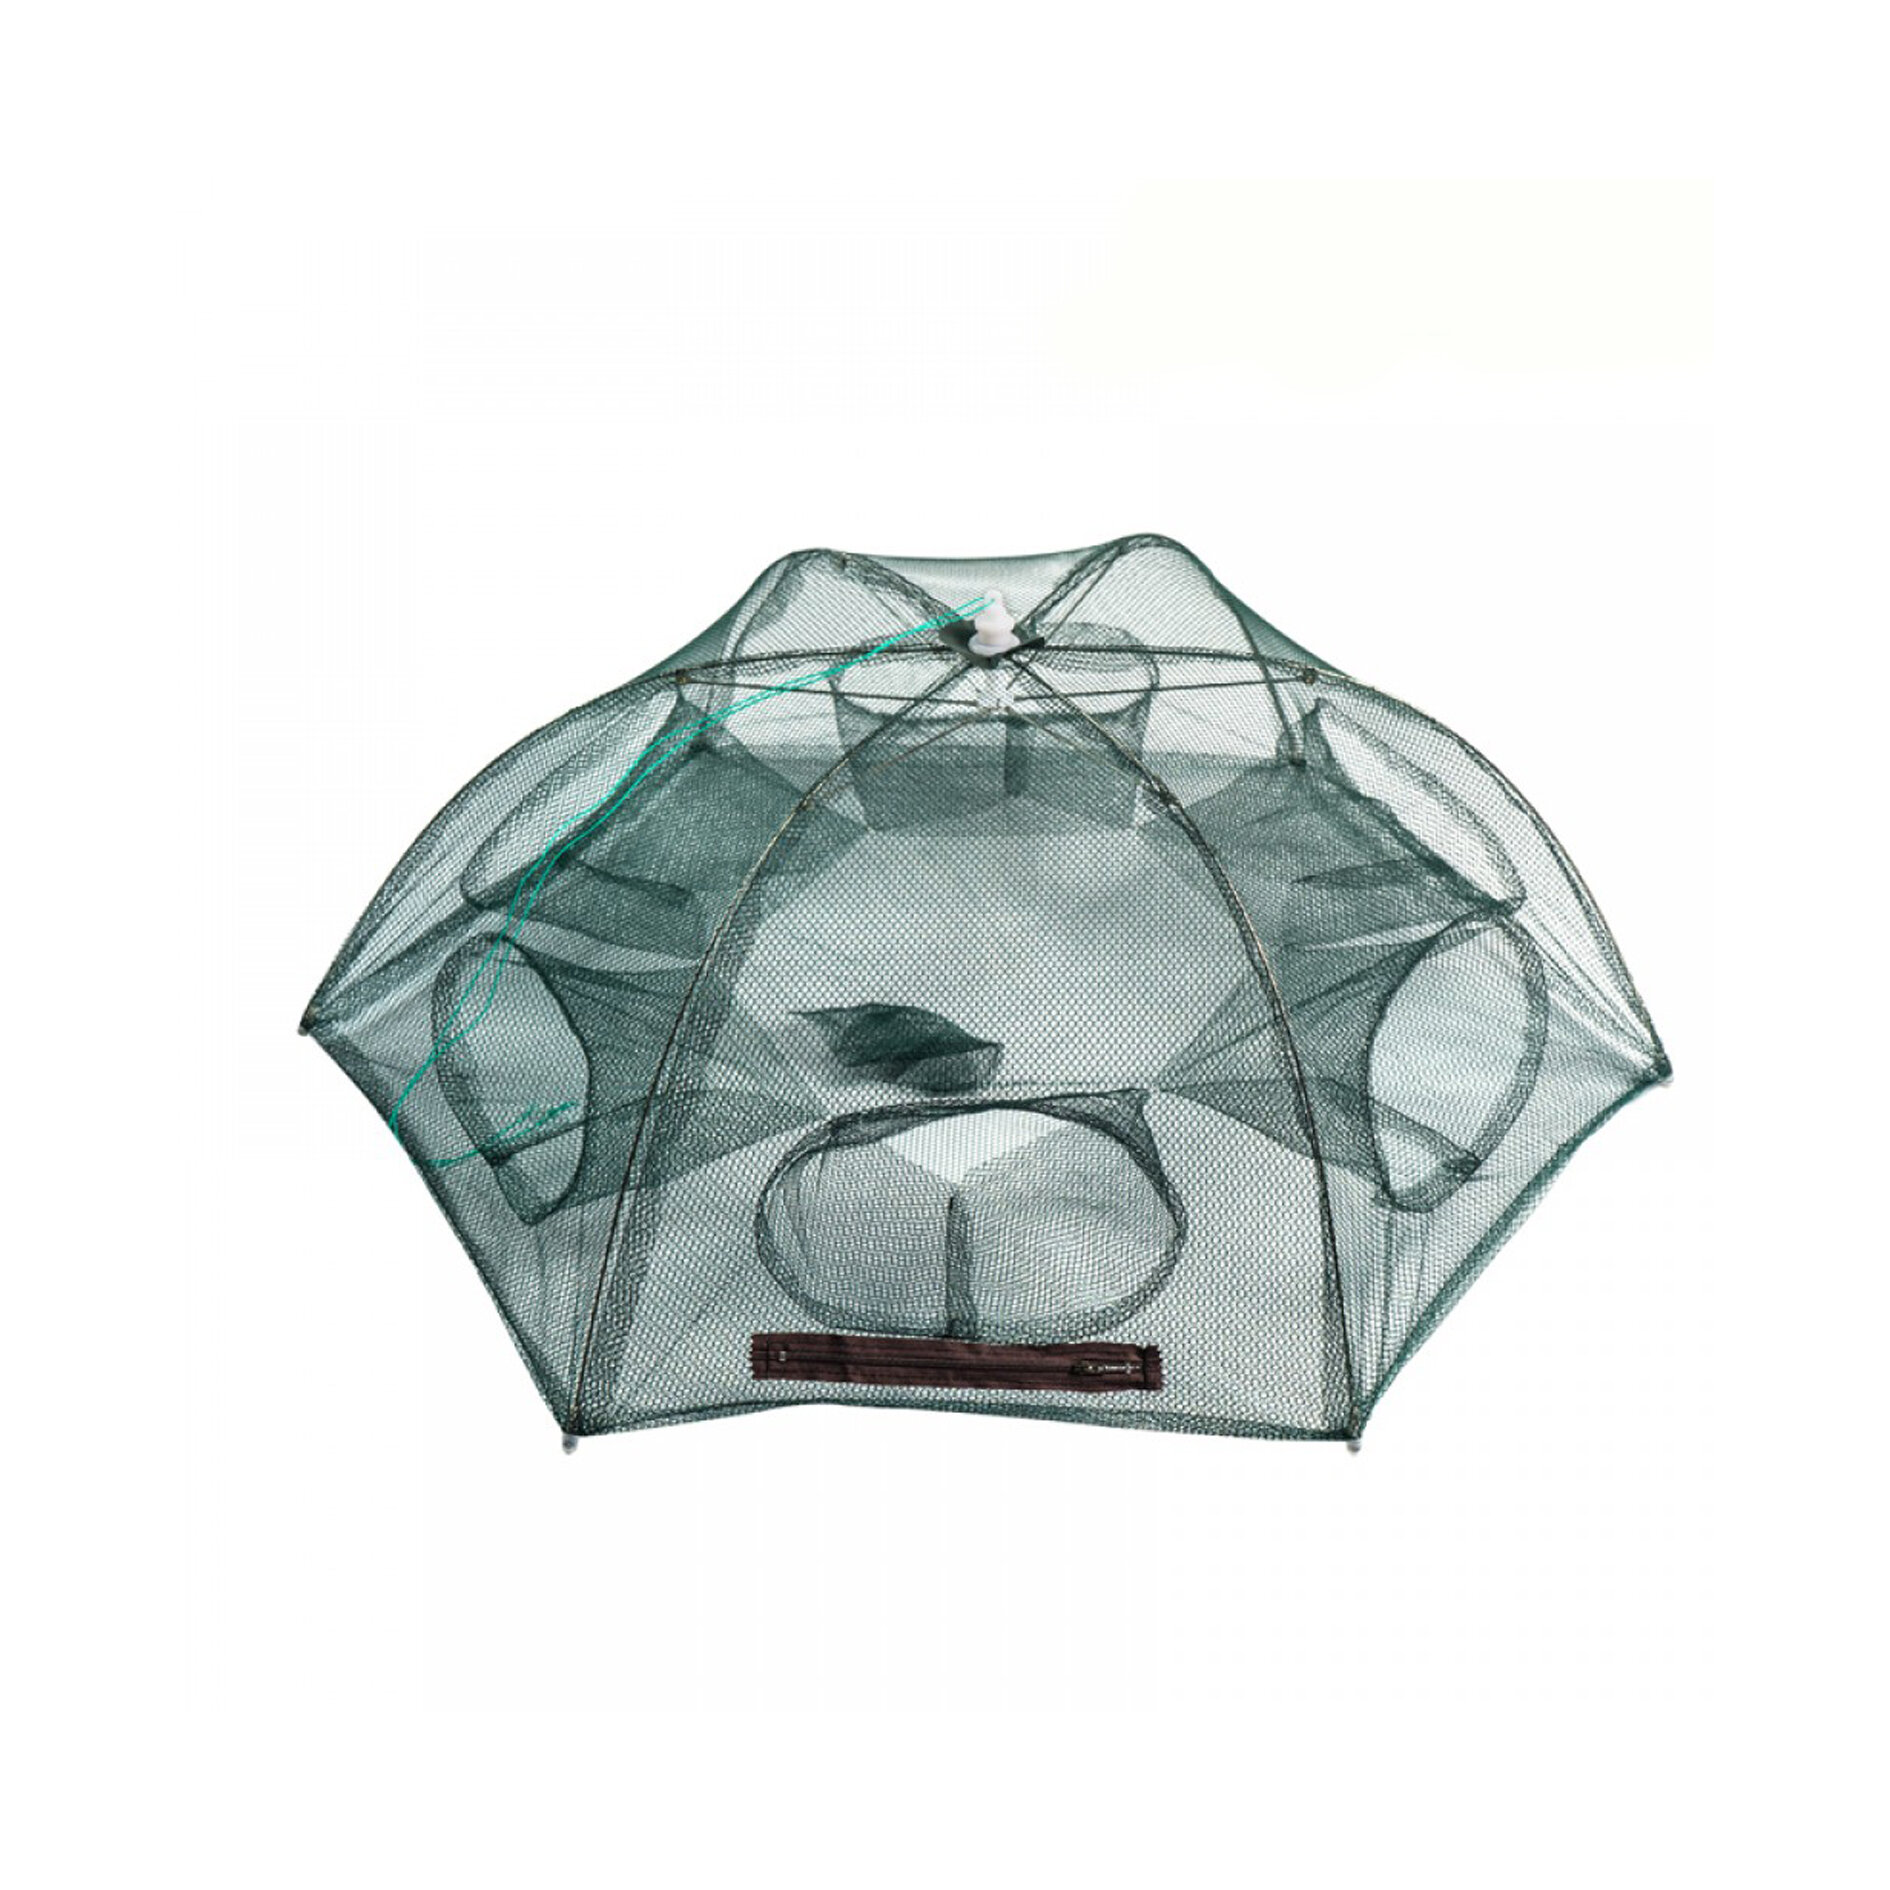 Раколовка зонтик 6 входов